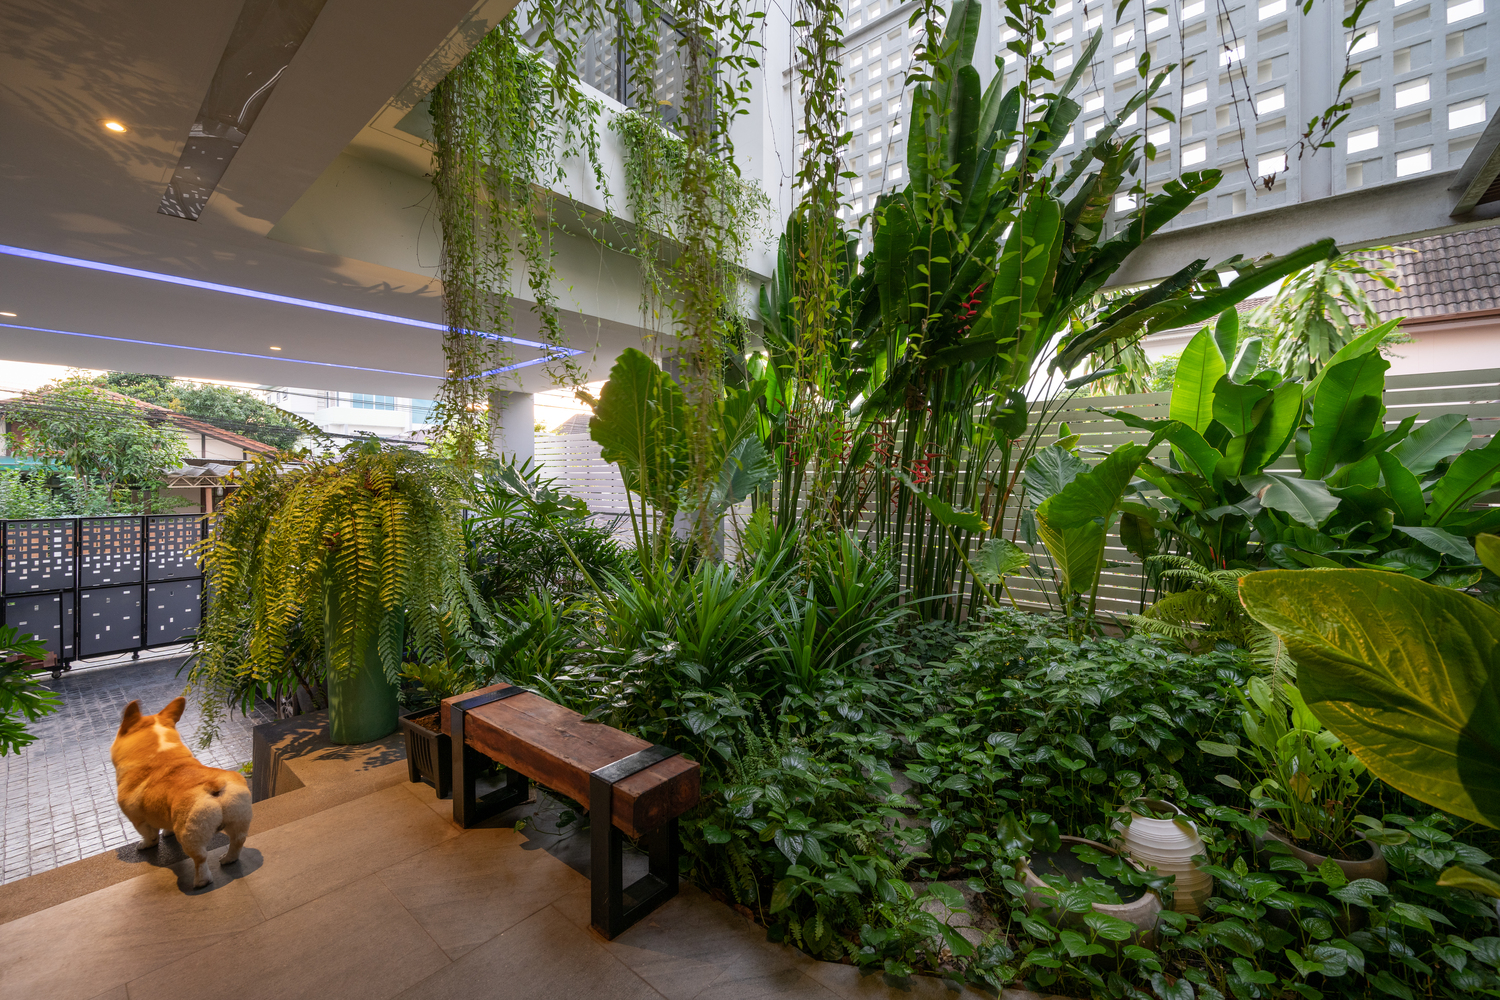 Căn biệt thự chứa cả sân vườn nhiệt đới xanh mát bên trong